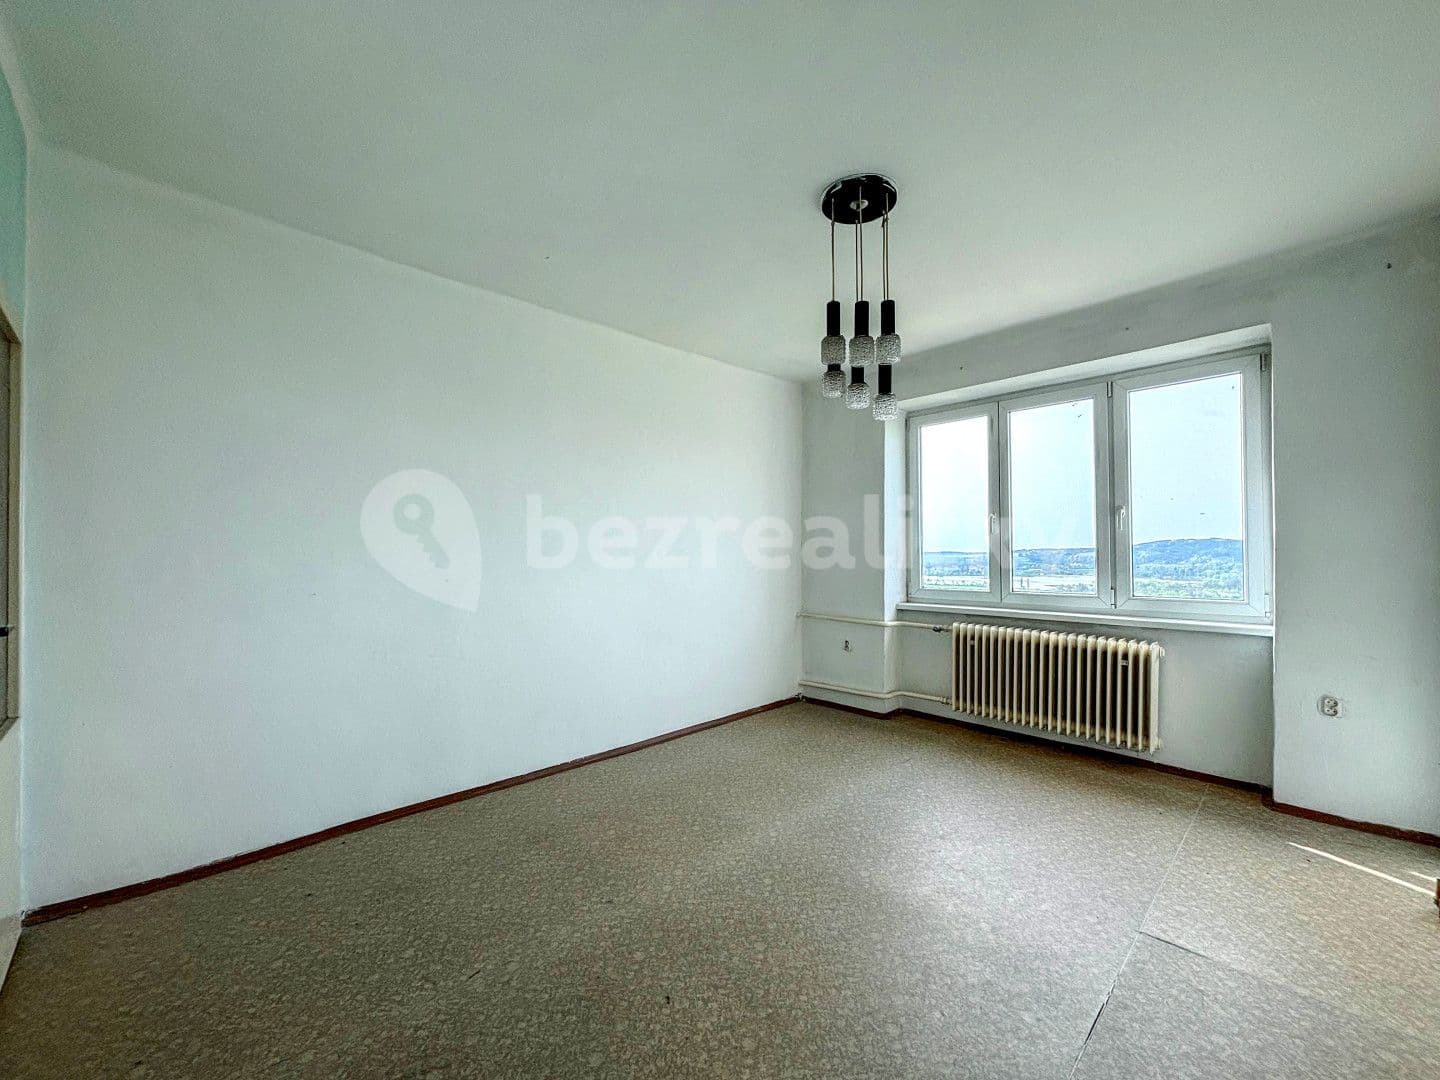 3 bedroom flat for sale, 60 m², Úštěk, Ústecký Region